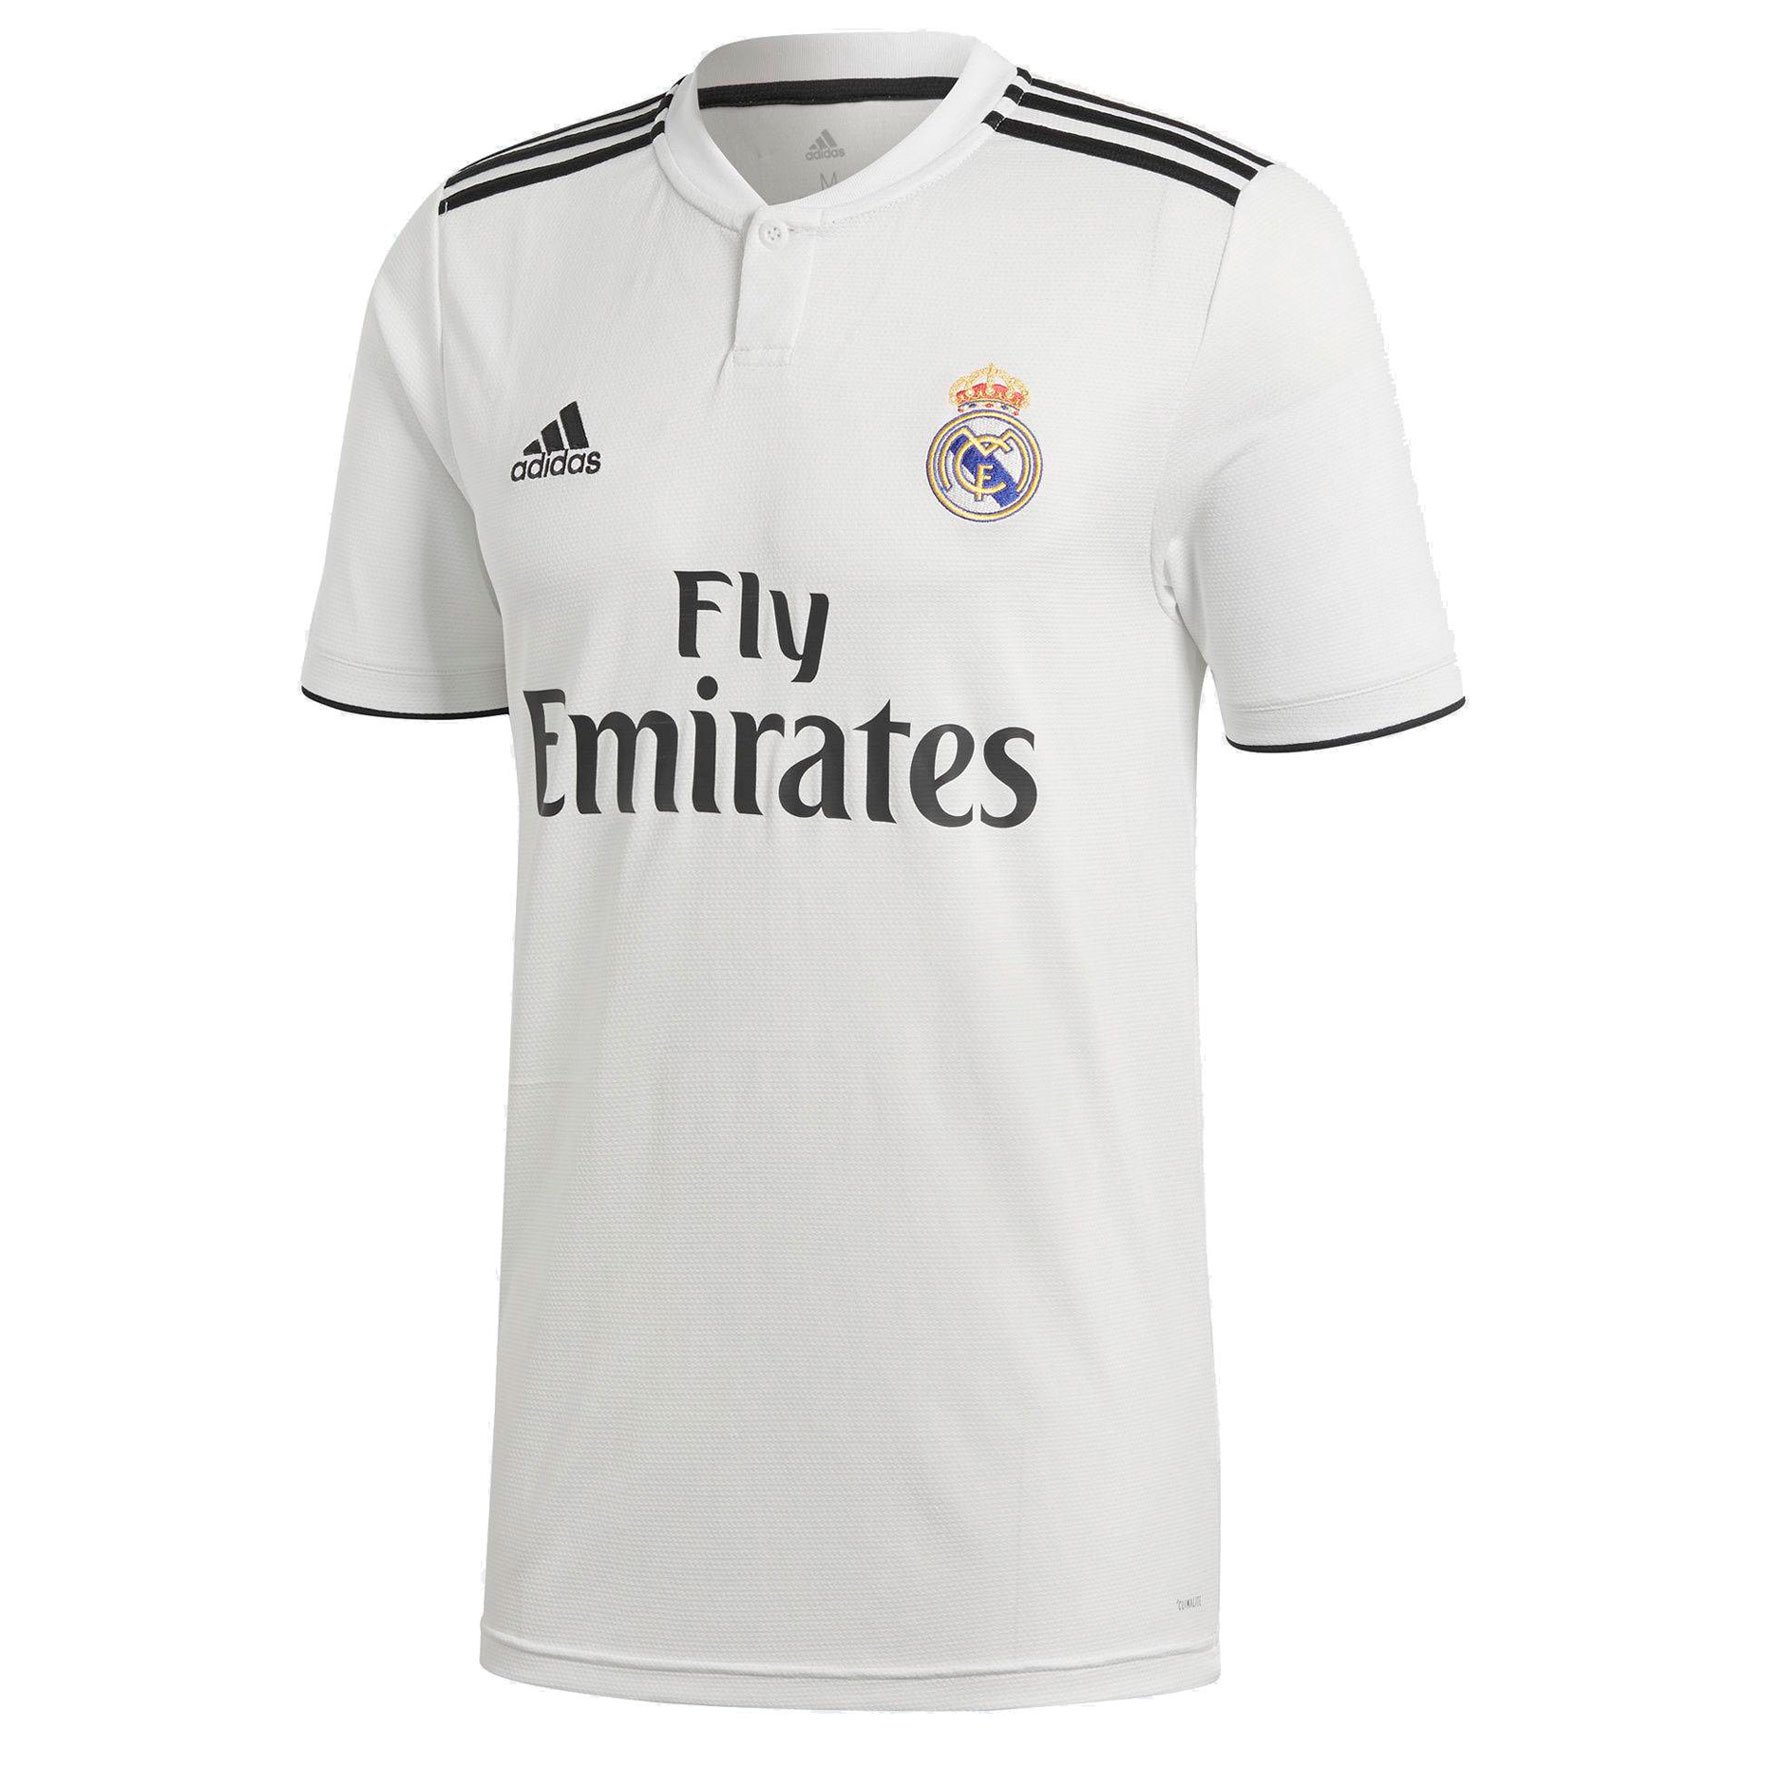 Домашняя игровая футболка adidas ФК «Реал Мадрид» 2018/19